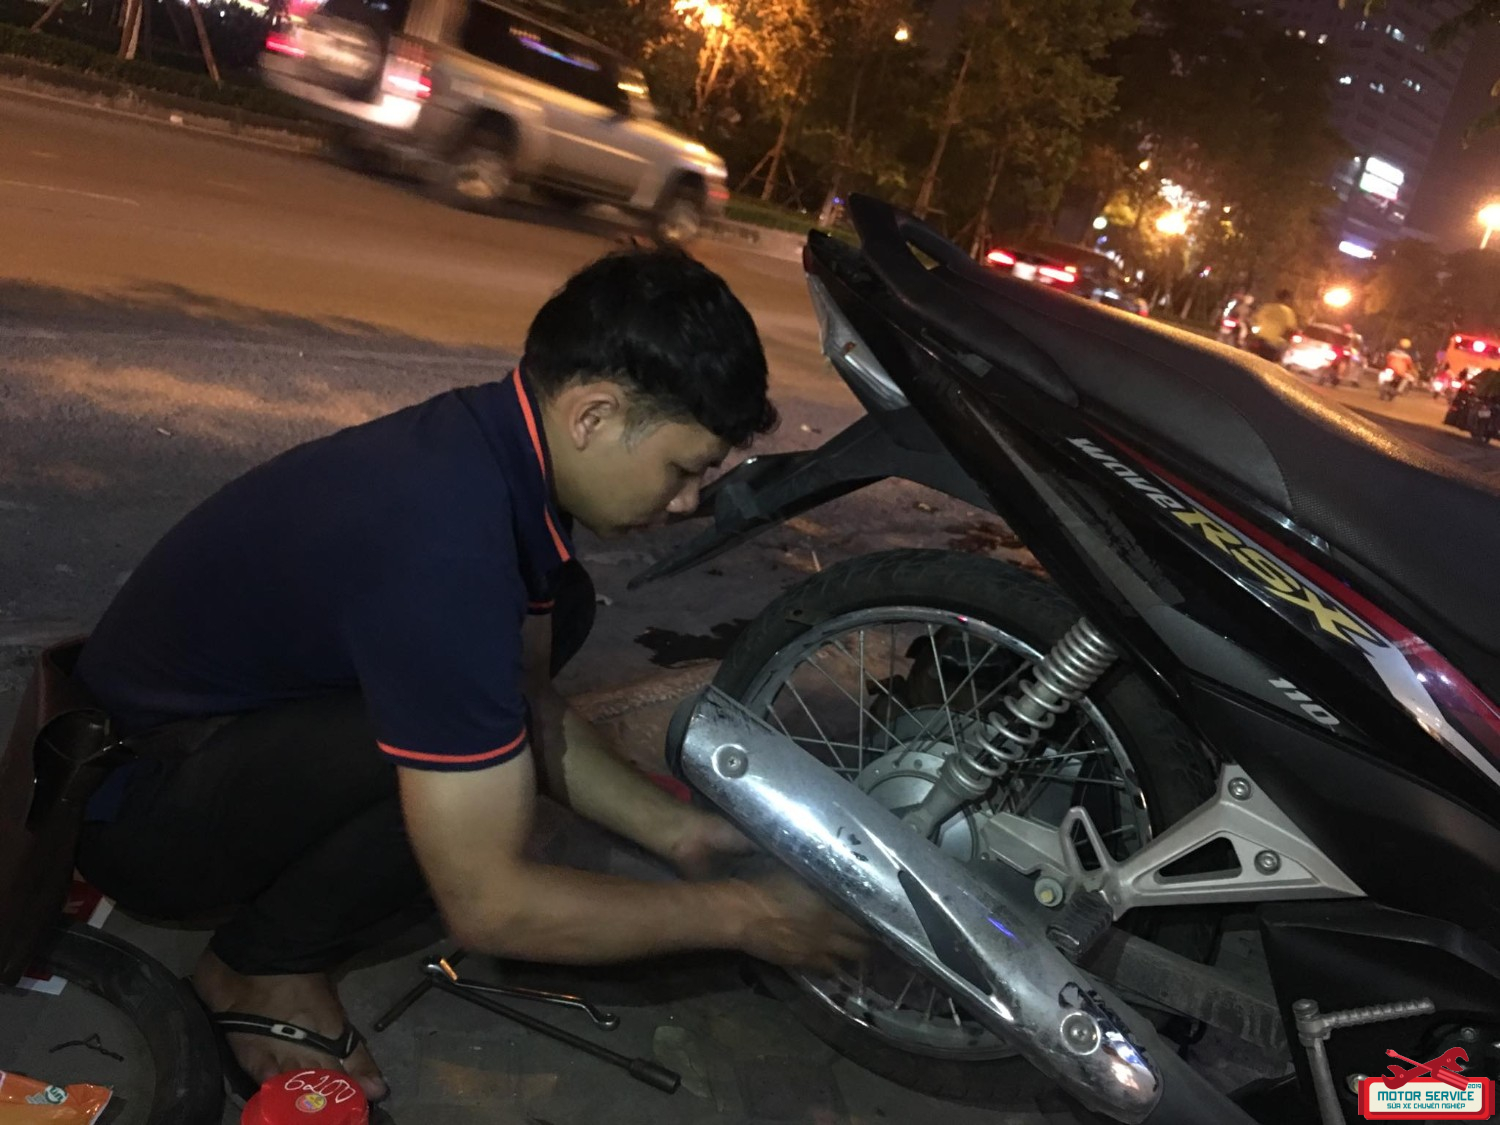 Bạn đang gặp vấn đề với xe máy tại Hà Nội? Đừng lo lắng! Chúng tôi sẵn sàng đến để sửa chữa chiếc xe của bạn, với đội ngũ thợ giỏi và uy tín. Hãy xem hình ảnh để biết thêm về dịch vụ chuyên nghiệp của chúng tôi tại Hà Nội.